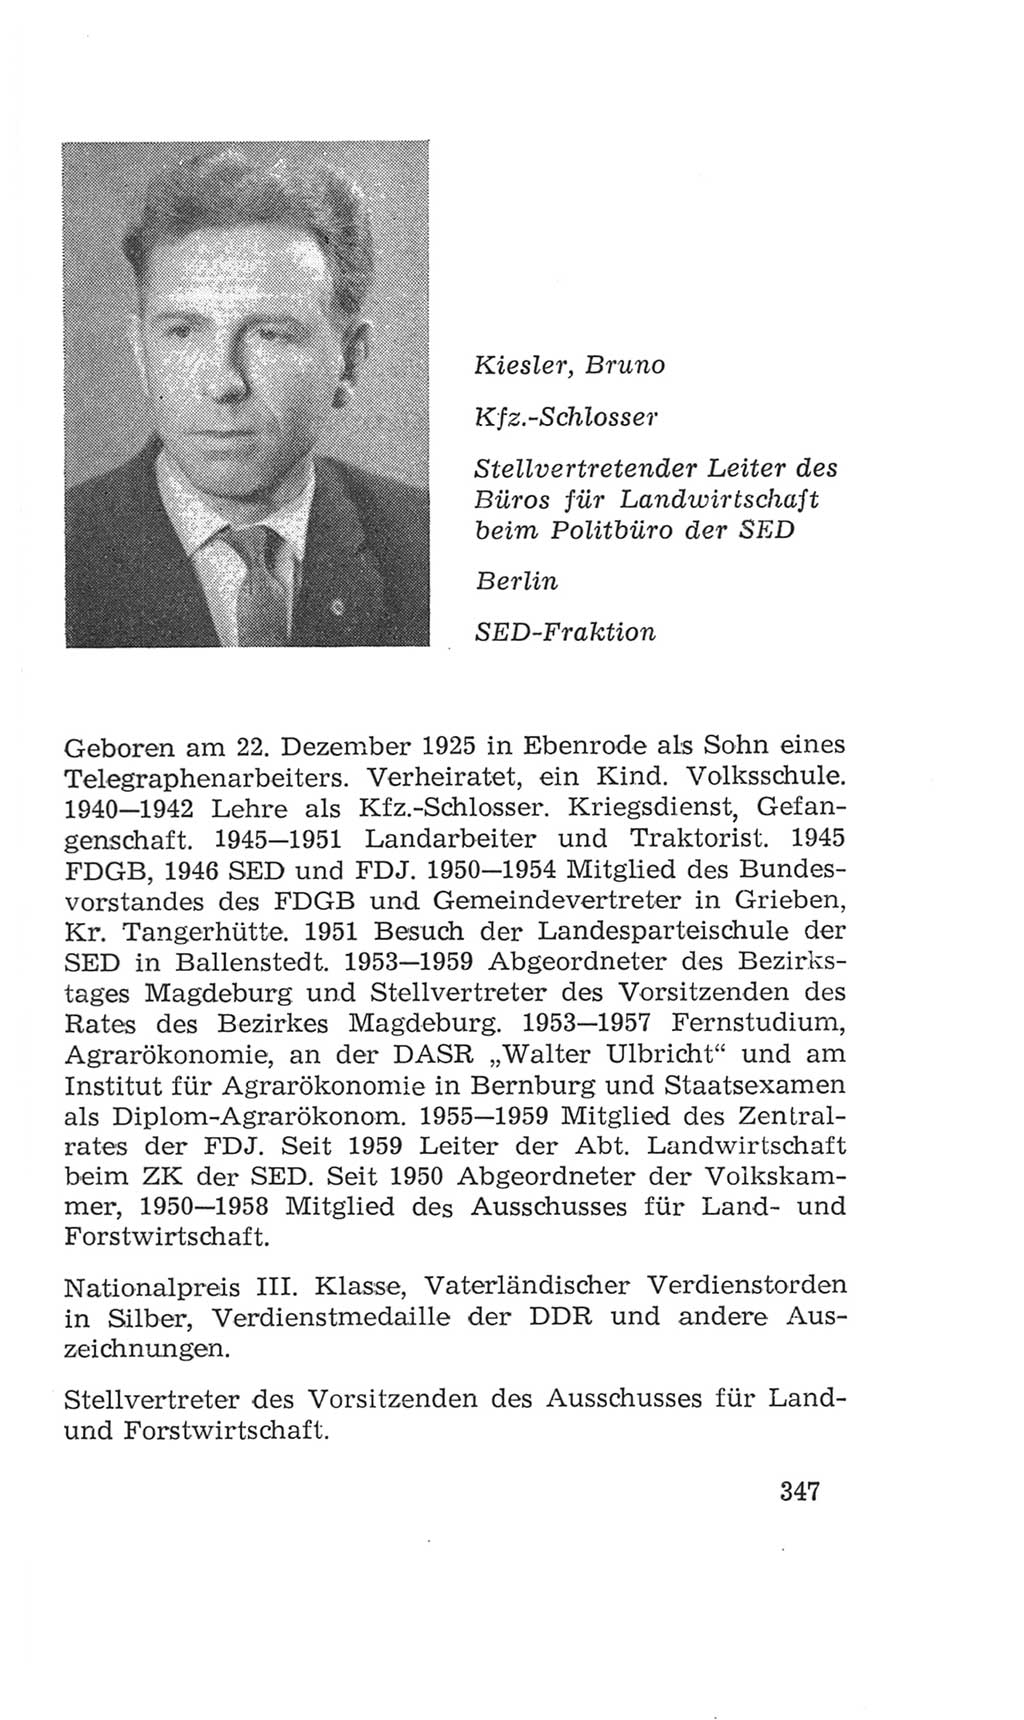 Volkskammer (VK) der Deutschen Demokratischen Republik (DDR), 4. Wahlperiode 1963-1967, Seite 347 (VK. DDR 4. WP. 1963-1967, S. 347)